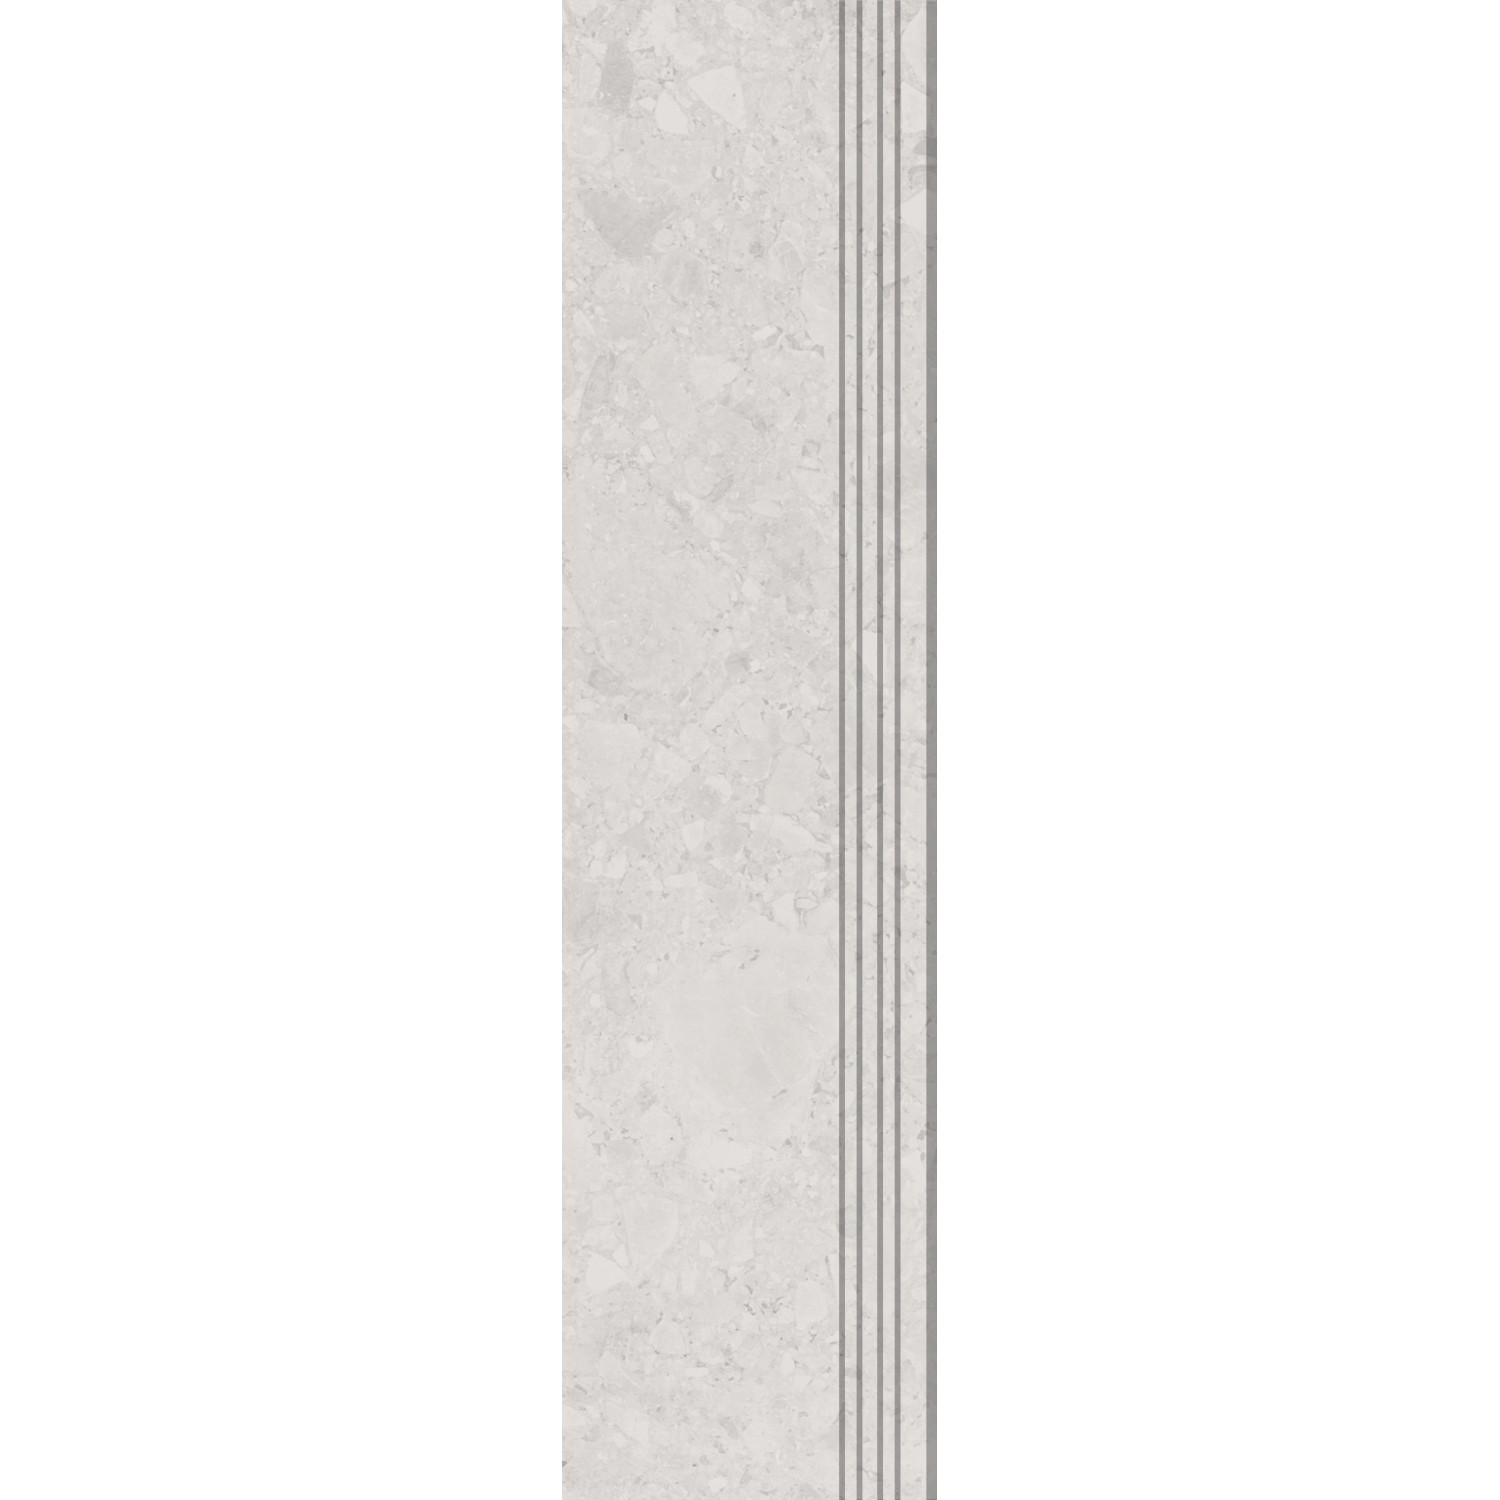 Trittstufe Riverstone Feinsteinzeug Glasiert Beige Matt 30 cm x 120 cm